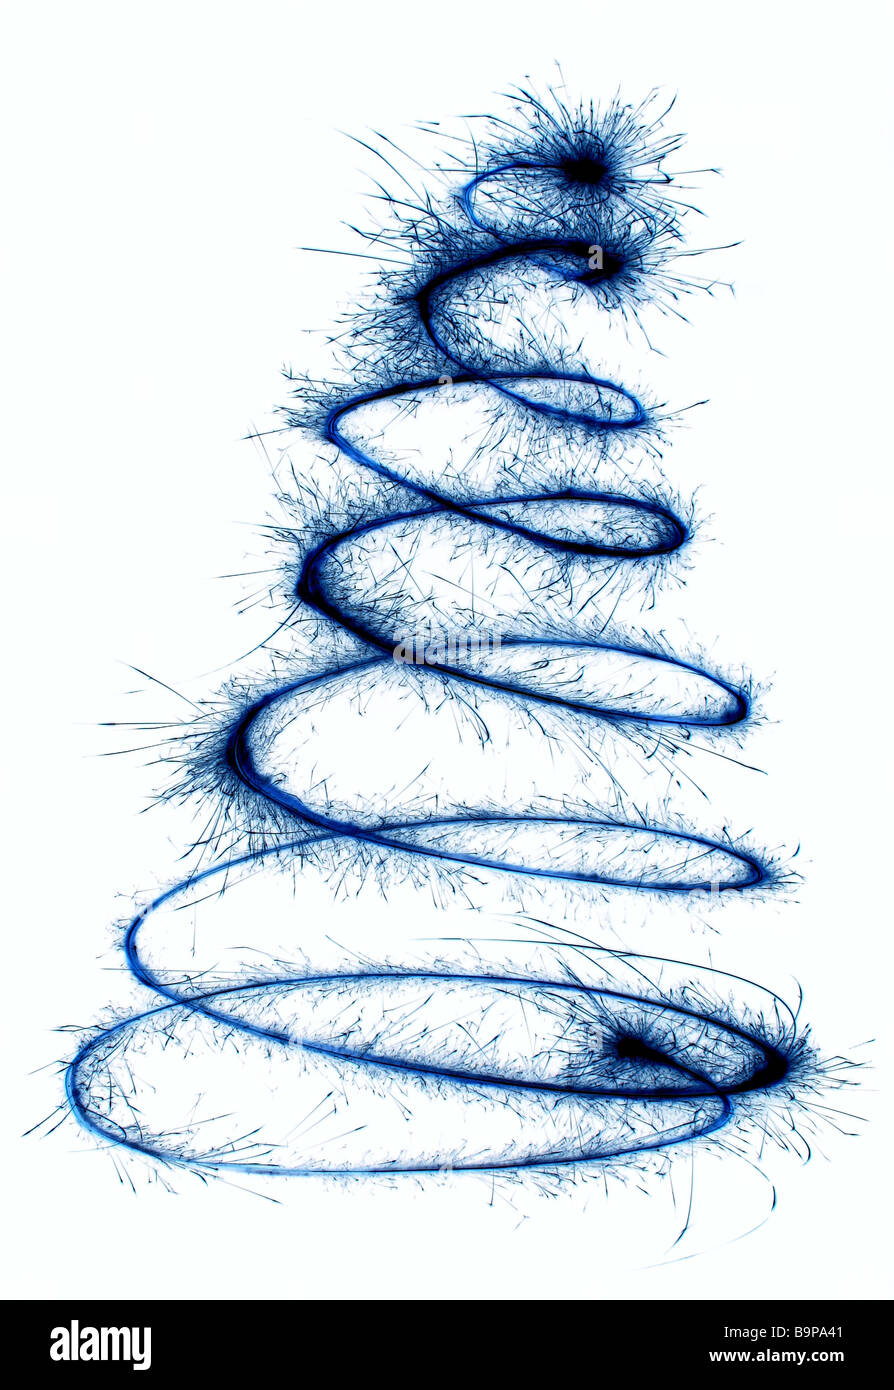 Wunderkerze Weihnachtsbaum Spirale invertieren Stockfoto